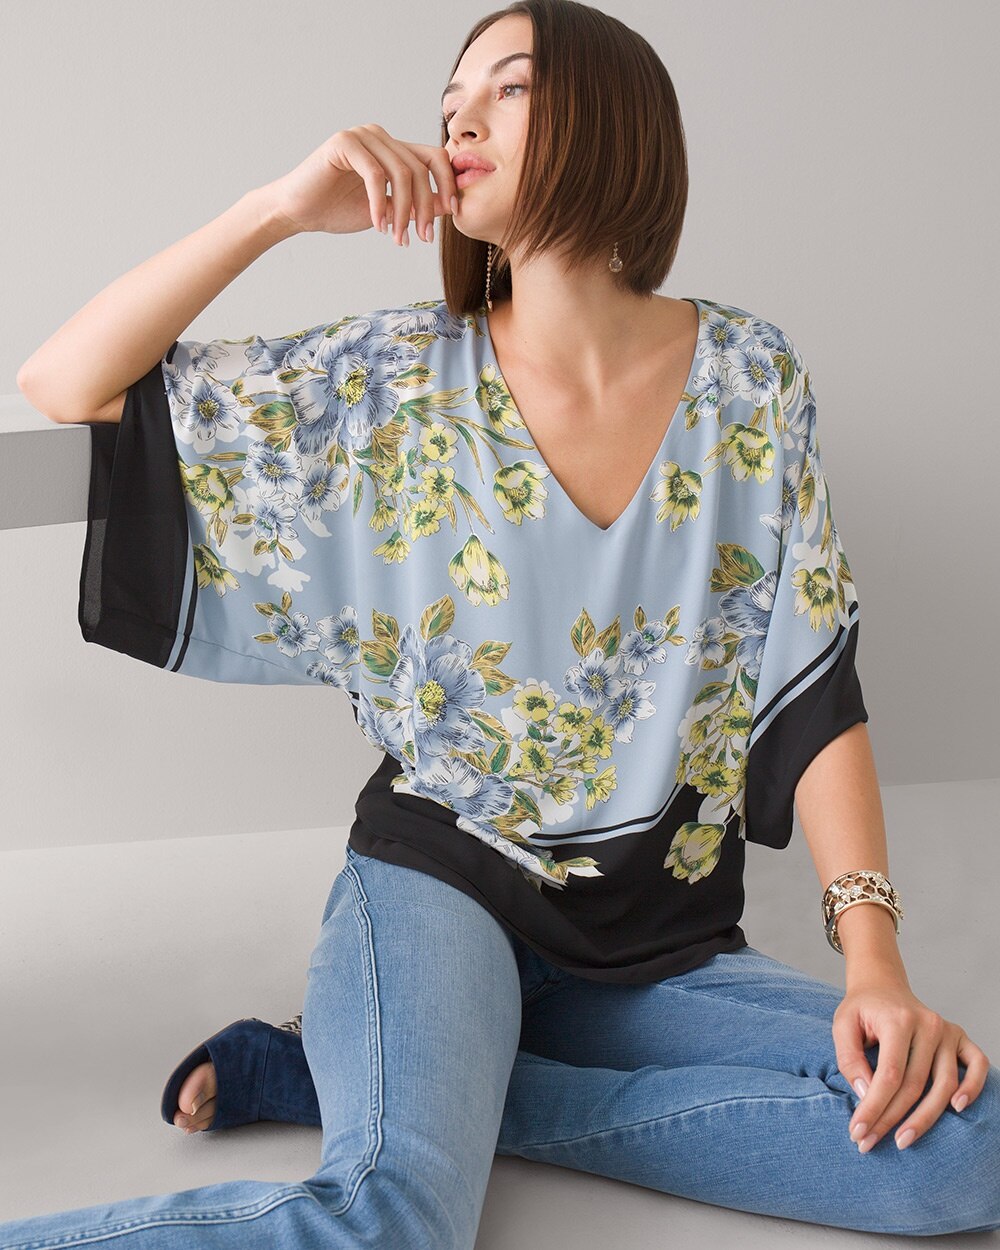 Kimono Shirt Floral Wrap Around Top Blouse Free Size 8 To 16 Designer